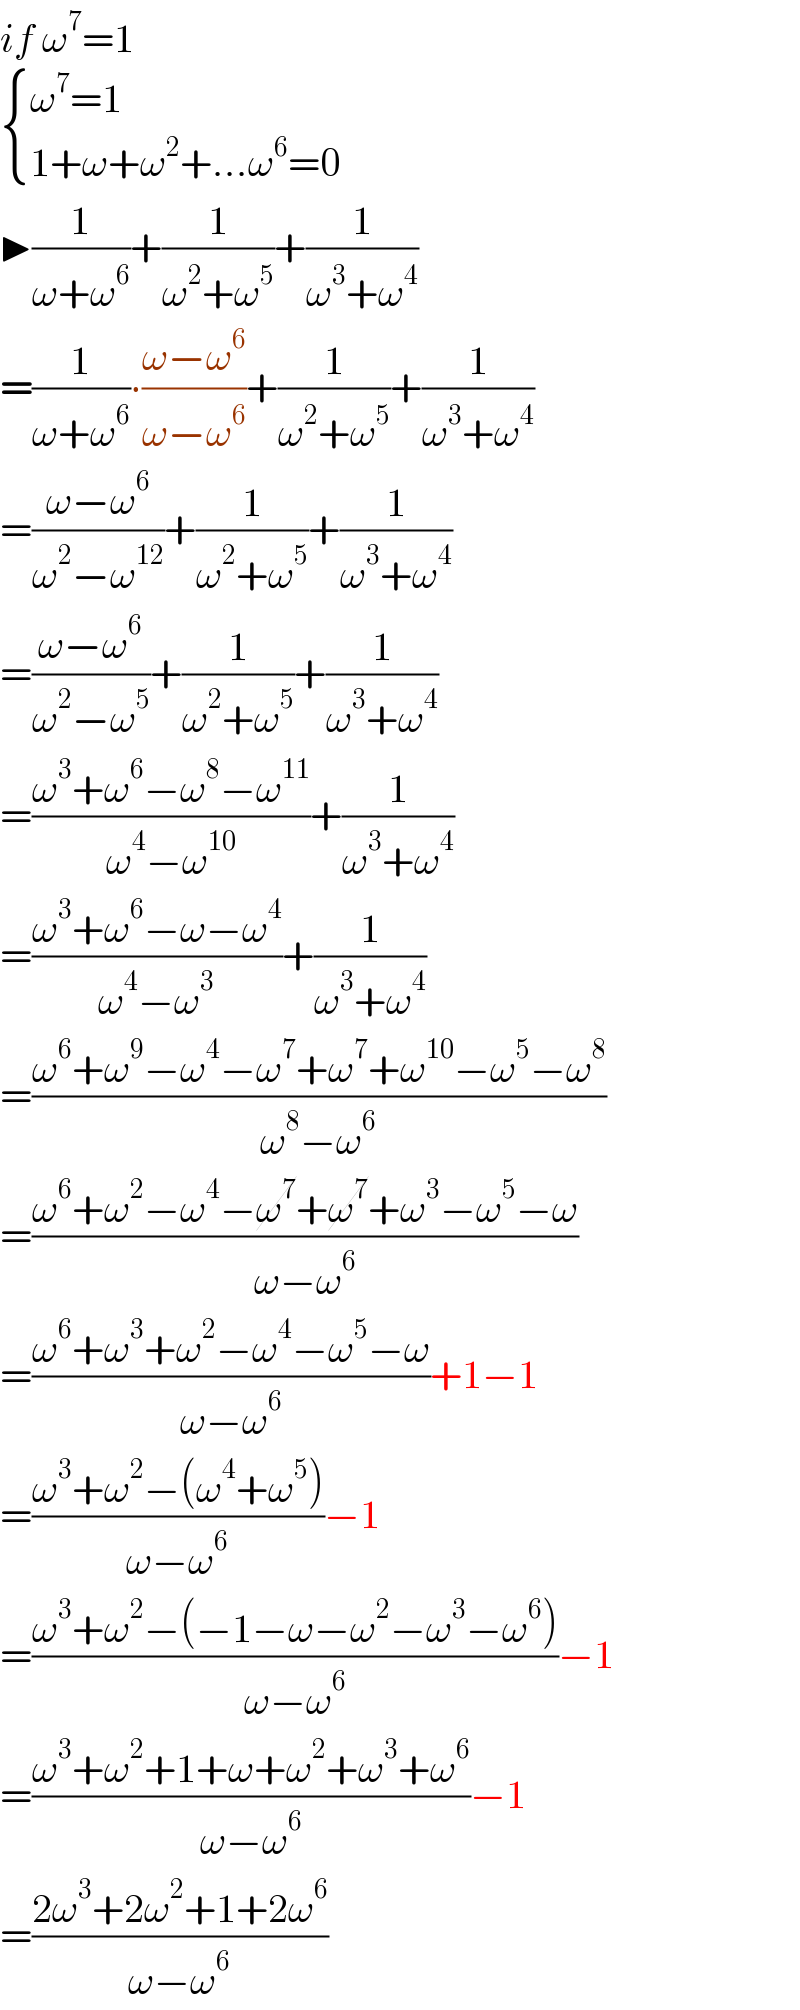 if ω^7 =1   { ((ω^7 =1)),((1+ω+ω^2 +...ω^6 =0)) :}  ▶(1/(ω+ω^6 ))+(1/(ω^2 +ω^5 ))+(1/(ω^3 +ω^4 ))  =(1/(ω+ω^6 ))∙((ω−ω^6 )/(ω−ω^6 ))+(1/(ω^2 +ω^5 ))+(1/(ω^3 +ω^4 ))  =((ω−ω^6 )/(ω^2 −ω^(12) ))+(1/(ω^2 +ω^5 ))+(1/(ω^3 +ω^4 ))  =((ω−ω^6 )/(ω^2 −ω^5 ))+(1/(ω^2 +ω^5 ))+(1/(ω^3 +ω^4 ))  =((ω^3 +ω^6 −ω^8 −ω^(11) )/(ω^4 −ω^(10) ))+(1/(ω^3 +ω^4 ))  =((ω^3 +ω^6 −ω−ω^4 )/(ω^4 −ω^3 ))+(1/(ω^3 +ω^4 ))  =((ω^6 +ω^9 −ω^4 −ω^7 +ω^7 +ω^(10) −ω^5 −ω^8 )/(ω^8 −ω^6 ))  =((ω^6 +ω^2 −ω^4 −ω^7 +ω^7 +ω^3 −ω^5 −ω)/(ω−ω^6 ))  =((ω^6 +ω^3 +ω^2 −ω^4 −ω^5 −ω)/(ω−ω^6 ))+1−1  =((ω^3 +ω^2 −(ω^4 +ω^5 ))/(ω−ω^6 ))−1  =((ω^3 +ω^2 −(−1−ω−ω^2 −ω^3 −ω^6 ))/(ω−ω^6 ))−1  =((ω^3 +ω^2 +1+ω+ω^2 +ω^3 +ω^6 )/(ω−ω^6 ))−1  =((2ω^3 +2ω^2 +1+2ω^6 )/(ω−ω^6 ))  